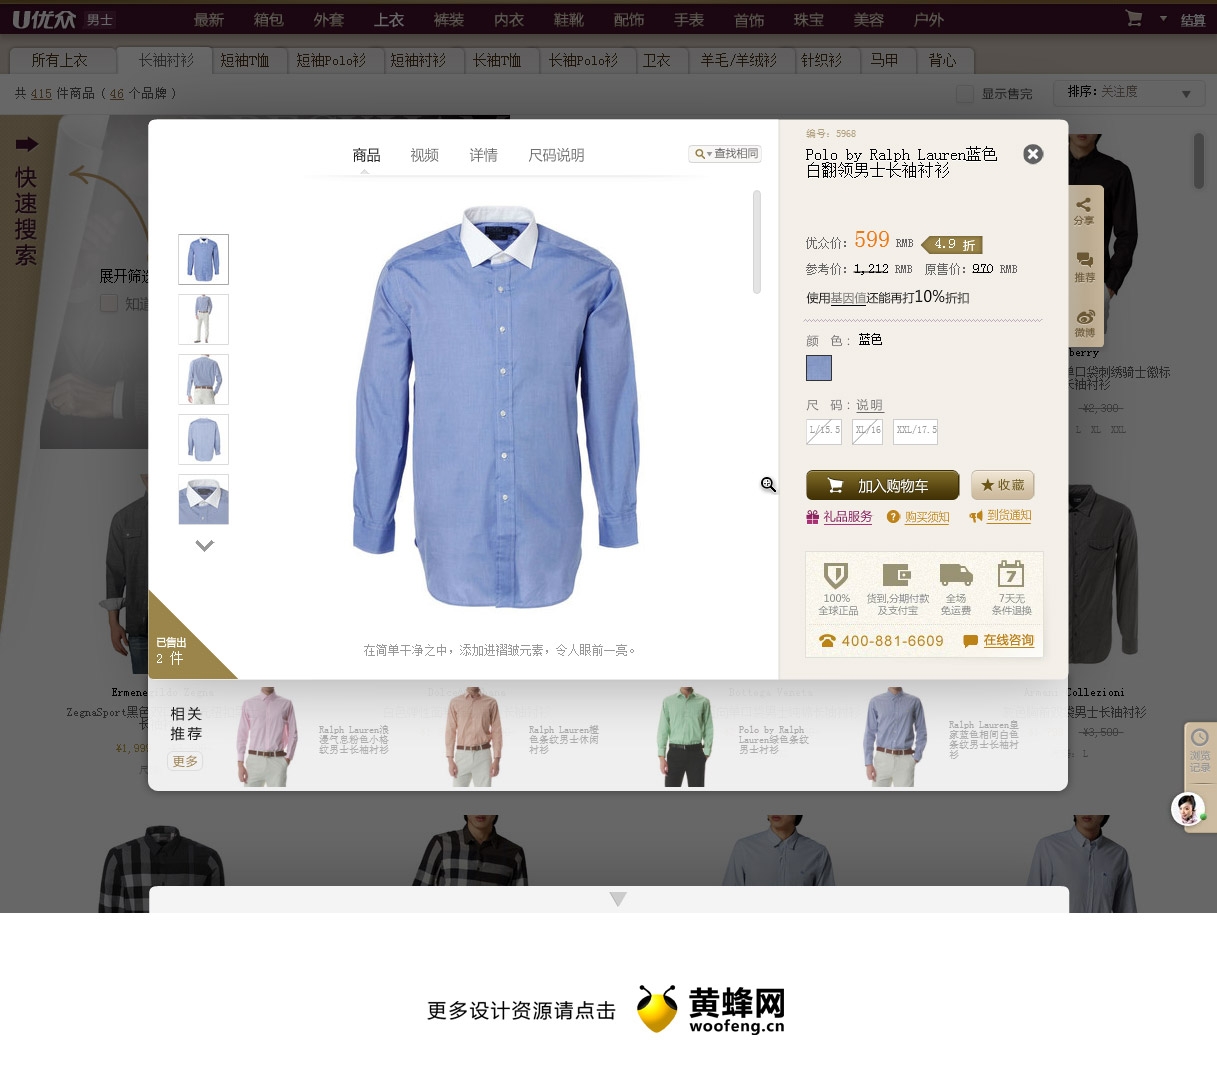 优众-全球顶级时尚奢侈品在线零售商，来源自黄蜂网https://woofeng.cn/web/